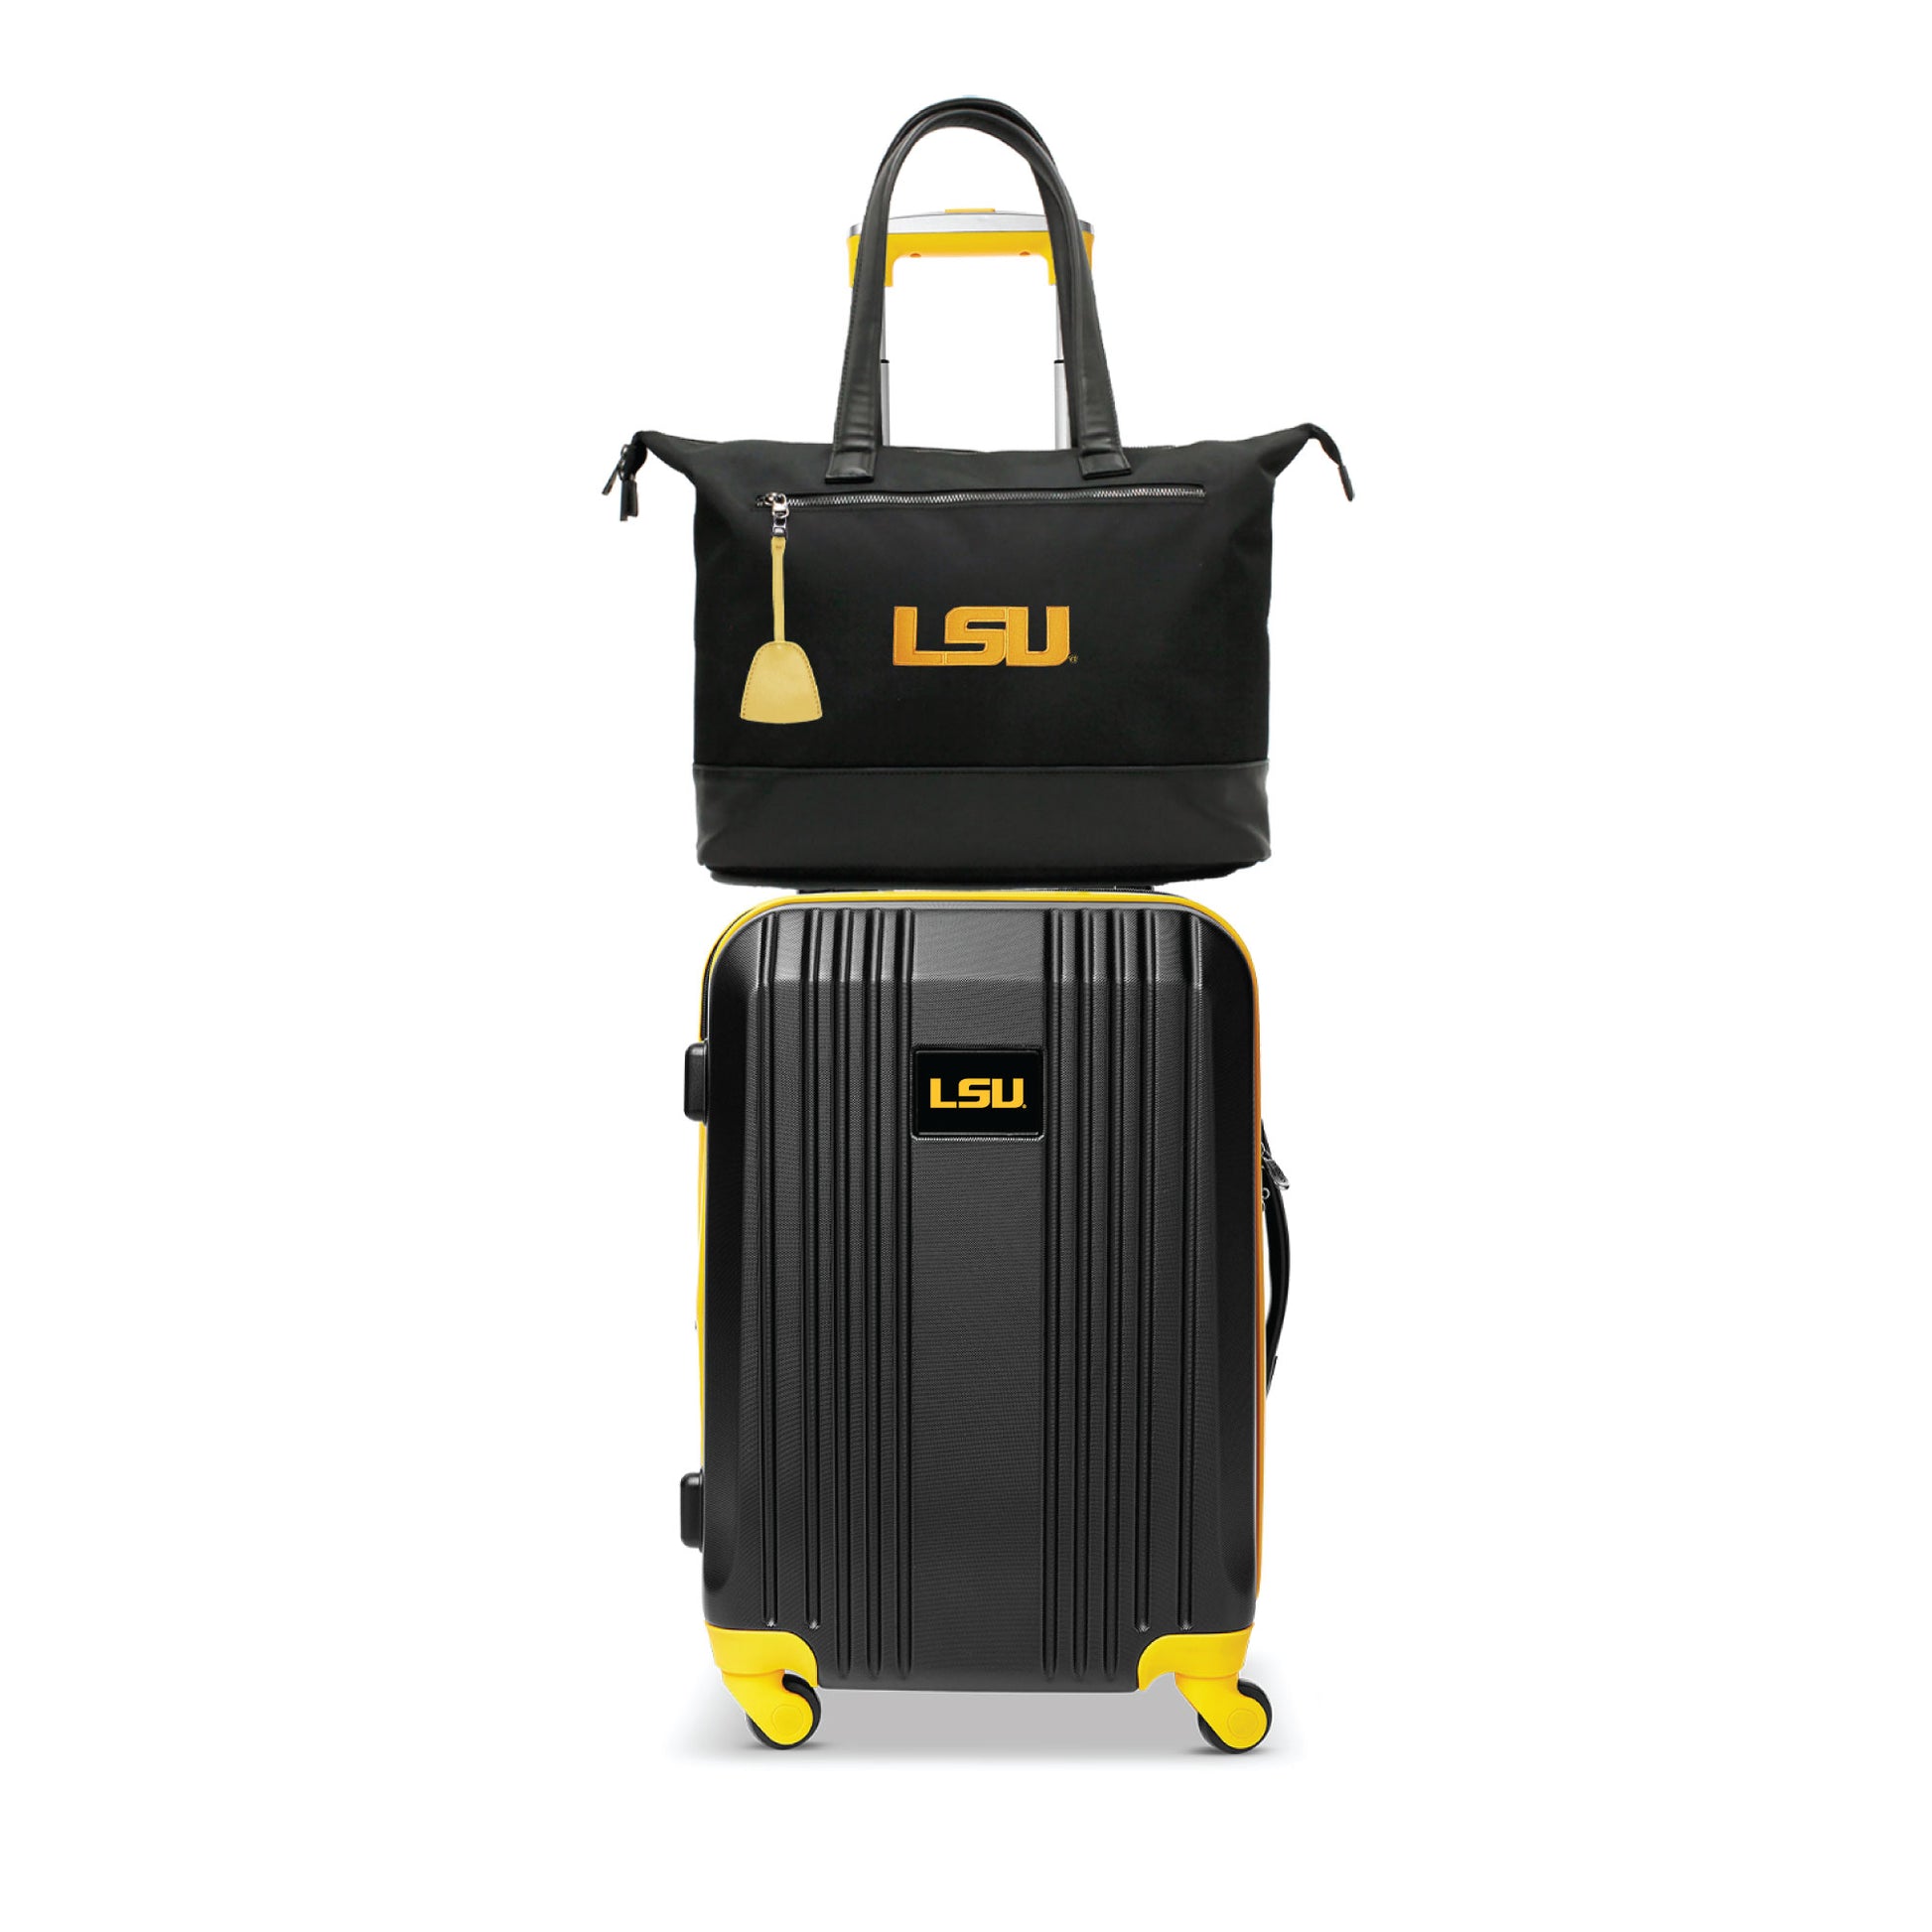 LSU Premium Laptop Tote Bag and Luggage Set